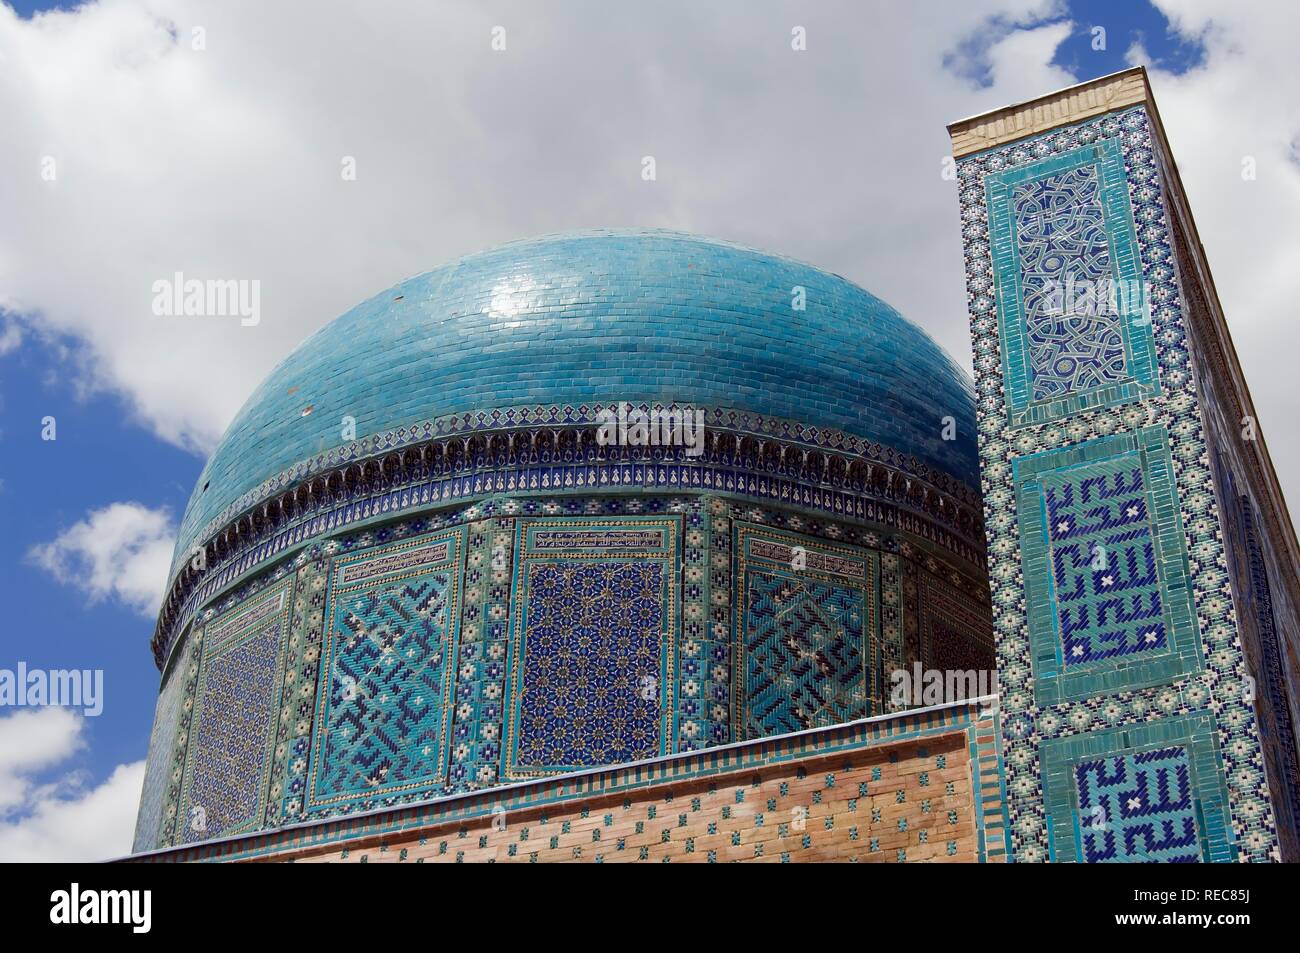 Usta Ali mausoleum, Shahr-I-Zindah or Shahi Sinda necropolis, Samarkand, UNESCO World Heritage Site, Uzbekistan Stock Photo